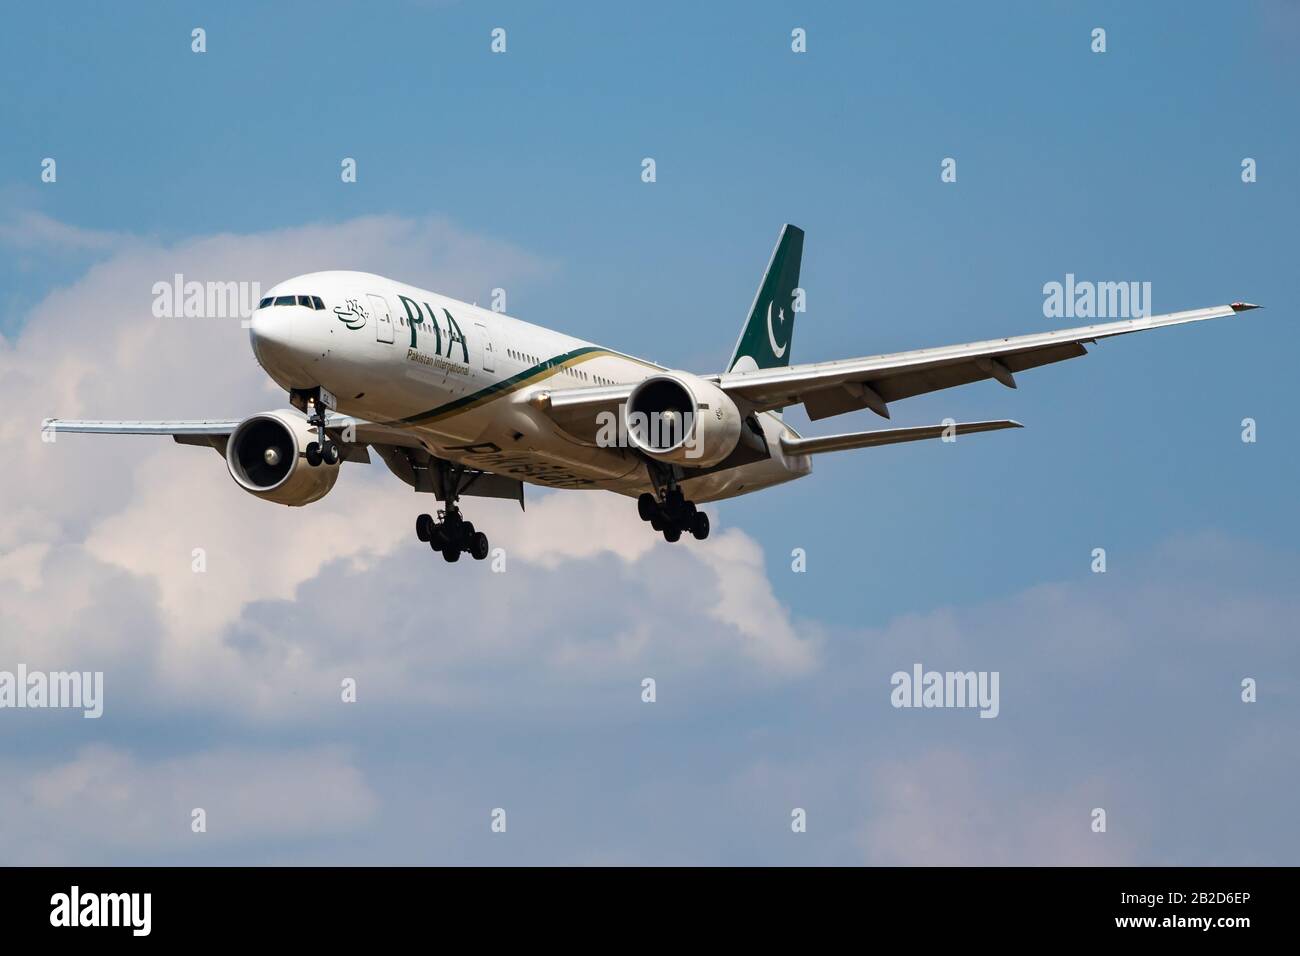 Londres / ROYAUME-UNI - 14 JUILLET 2018: PIA Pakistan International Airlines Boeing 777-200 AP-BGL avion de passagers atterrissage à l'aéroport de Londres Heathrow Banque D'Images